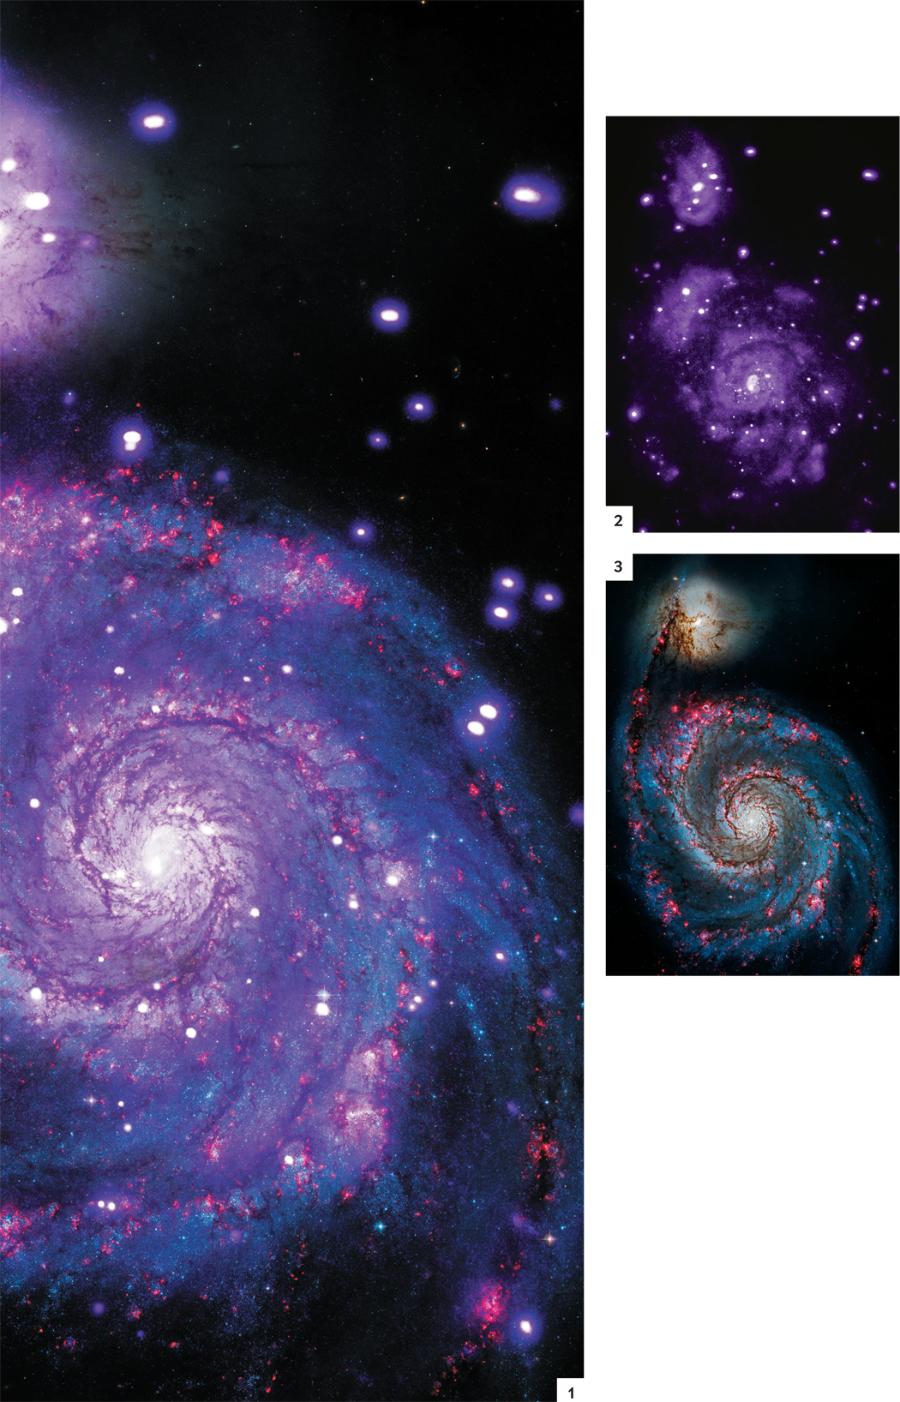 Wirujące spirale
W dwóch łączących się galaktykach o nazwie M51 albo Wir widać piękne ramiona charakterystyczne dla galaktyk spiralnych. Obraz pokazuje około 400 źródeł promieniowania rentgenowskiego, z których większość to gwiazdy podwójne, położone głównie w pobliżu obszarów formowania się gwiazd. Naukowcy podejrzewają, że wzajemne oddziaływanie dwóch galaktyk wzbudziło falę procesów gwiazdotwórczych, czego wynikiem jest duża liczba rentgenowskich układów podwójnych. Z faktu, że jeden z tych układów pulsuje, można wnioskować, iż jego zwartym składnikiem jest gwiazda neutronowa akreująca dużą ilość materii wyrywanej ze swego towarzysza, dzięki czemu układ ten jest niezwykle jasny. Ilustracja po lewej stronie (1) powstała jako złożenie obrazu rentgenowskiego uzyskanego przez Chandrę (2) i fotografii w zakresie optycznym zrobionej przez Kosmiczny Teleskop Hubble’a (3). Dzięki łączeniu danych z różnych teleskopów astronomowie otrzymują bogatsze obrazy, które odsłaniają zjawiska widoczne w różnych zakresach fal widma promieniowania elektromagnetycznego.
Promieniowanie rentgenowskie: NASA, CXC, WESLEYAN UNIV. I R. KILGARD i in.; Optyczne: NASA i STSCI